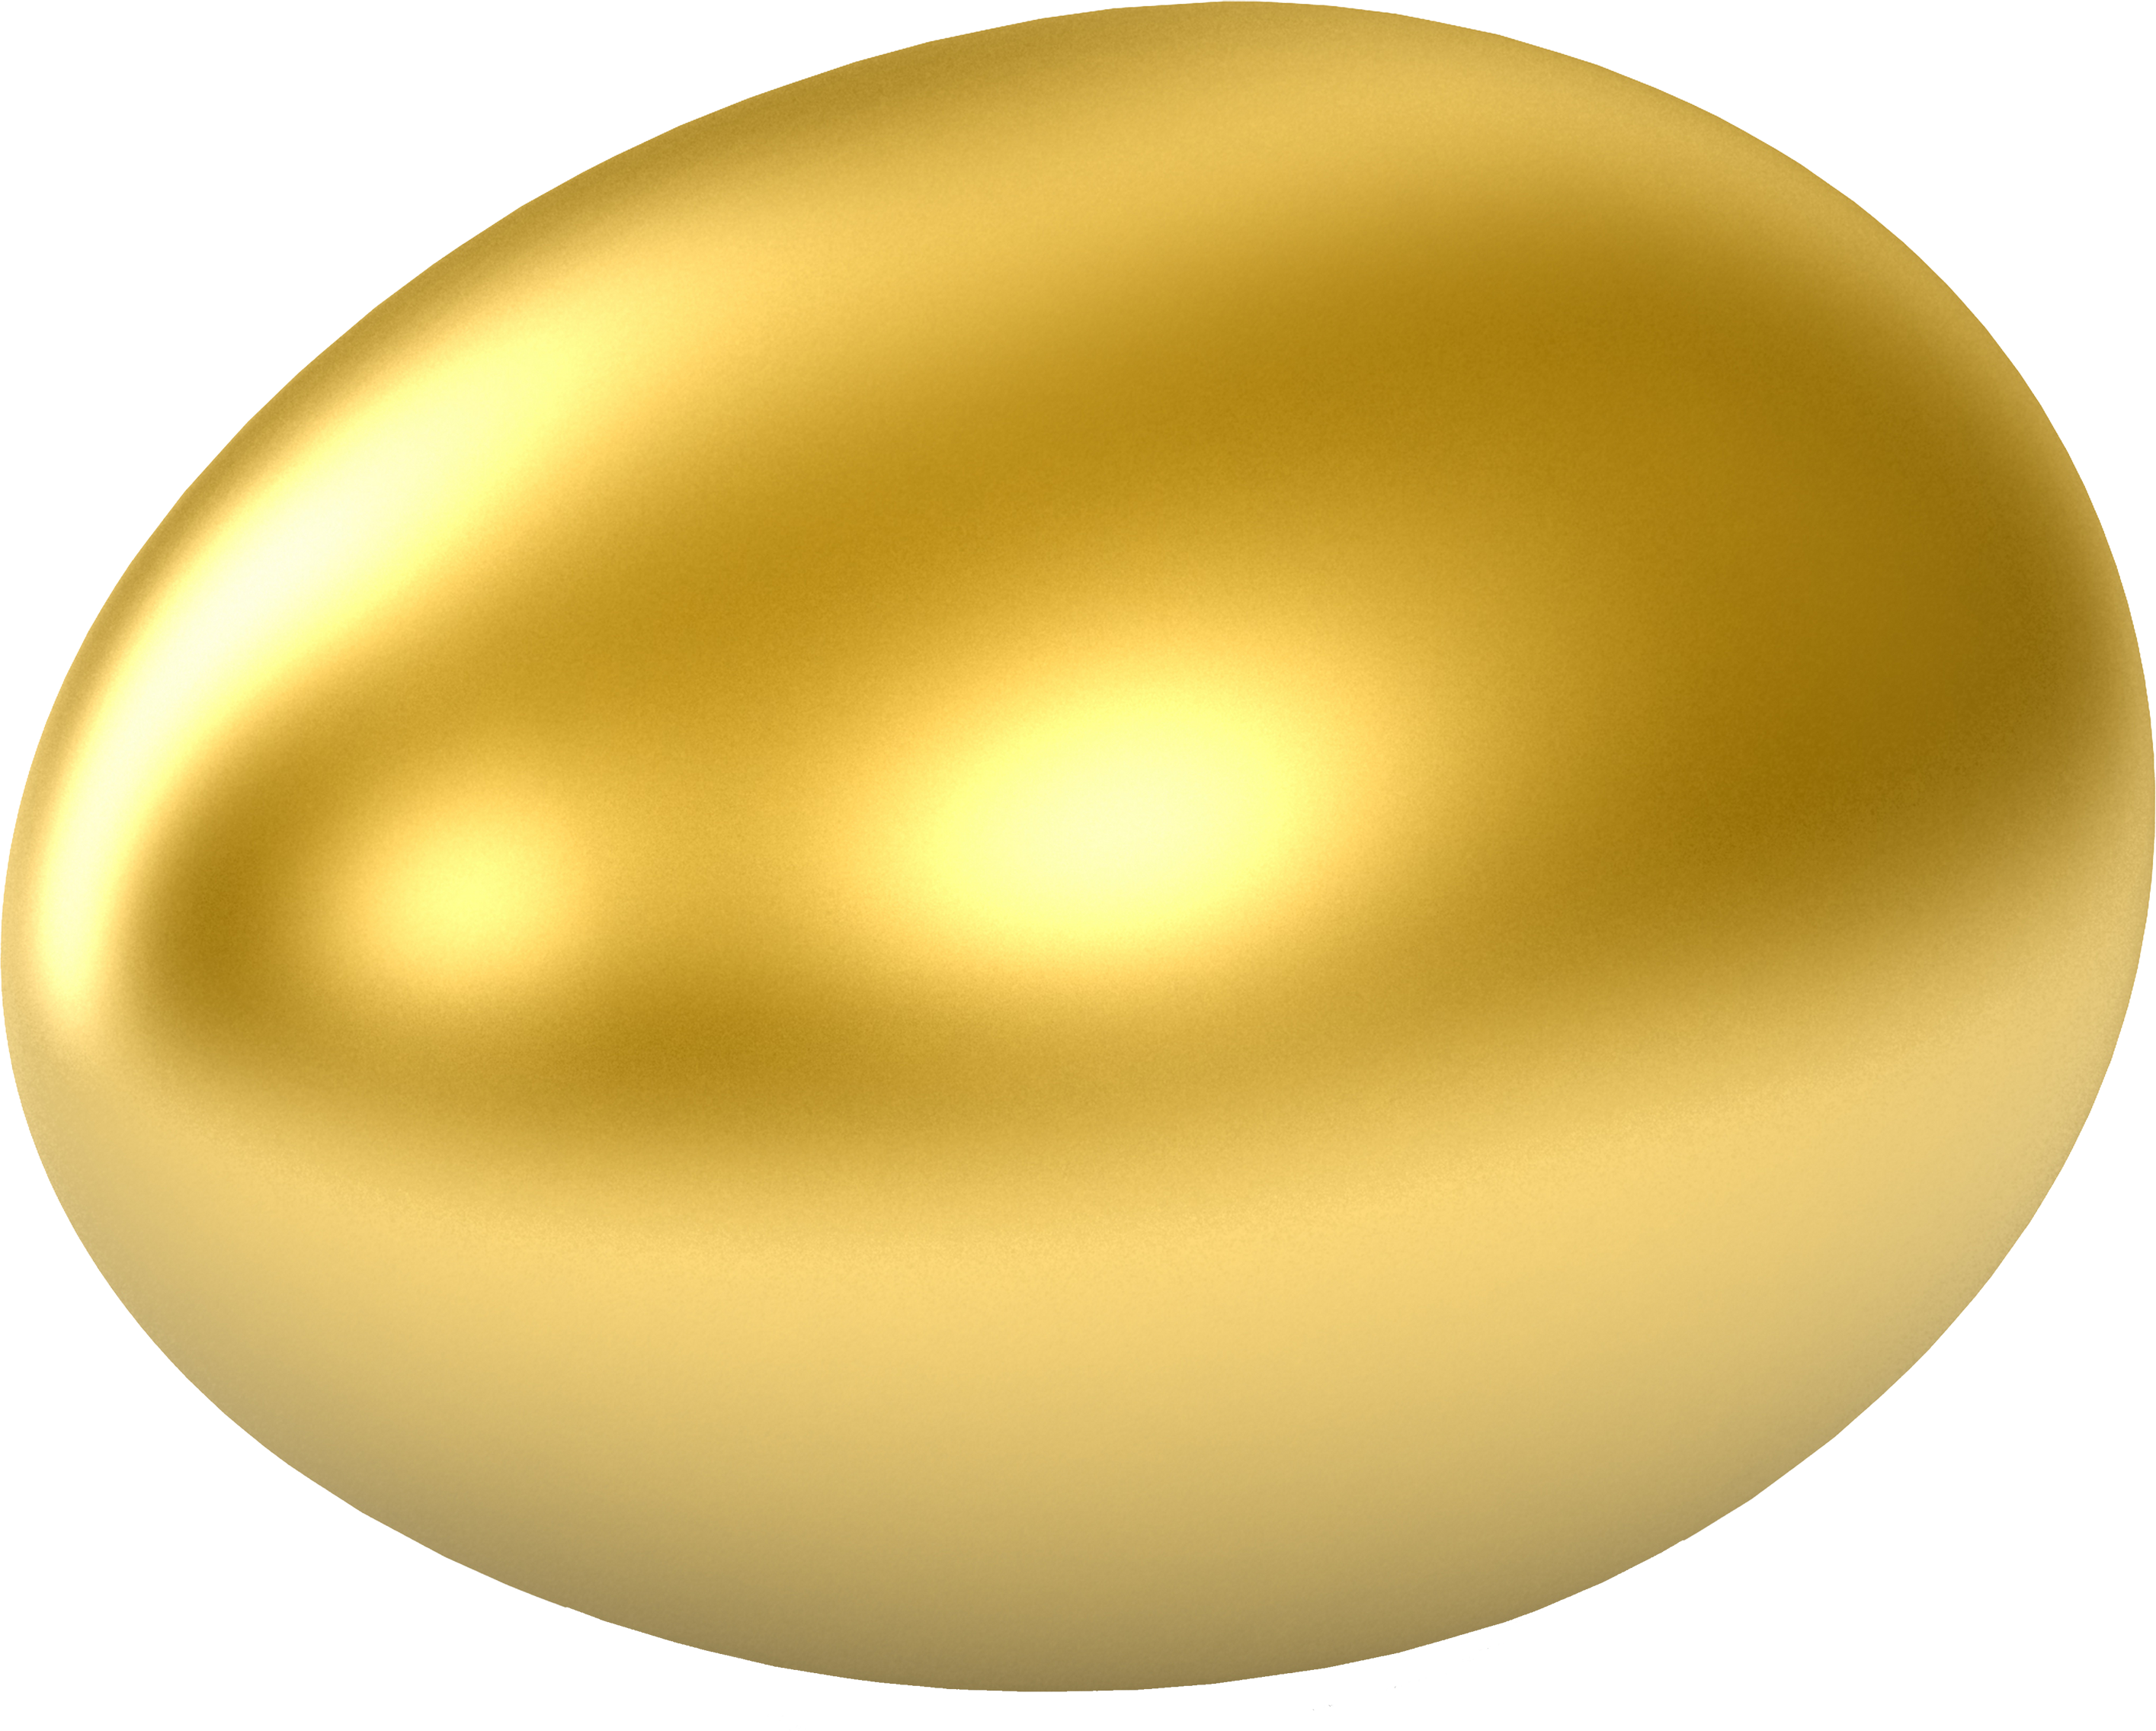 Gold Egg Png Image   Egg Hd Png - Broken Egg, Transparent background PNG HD thumbnail